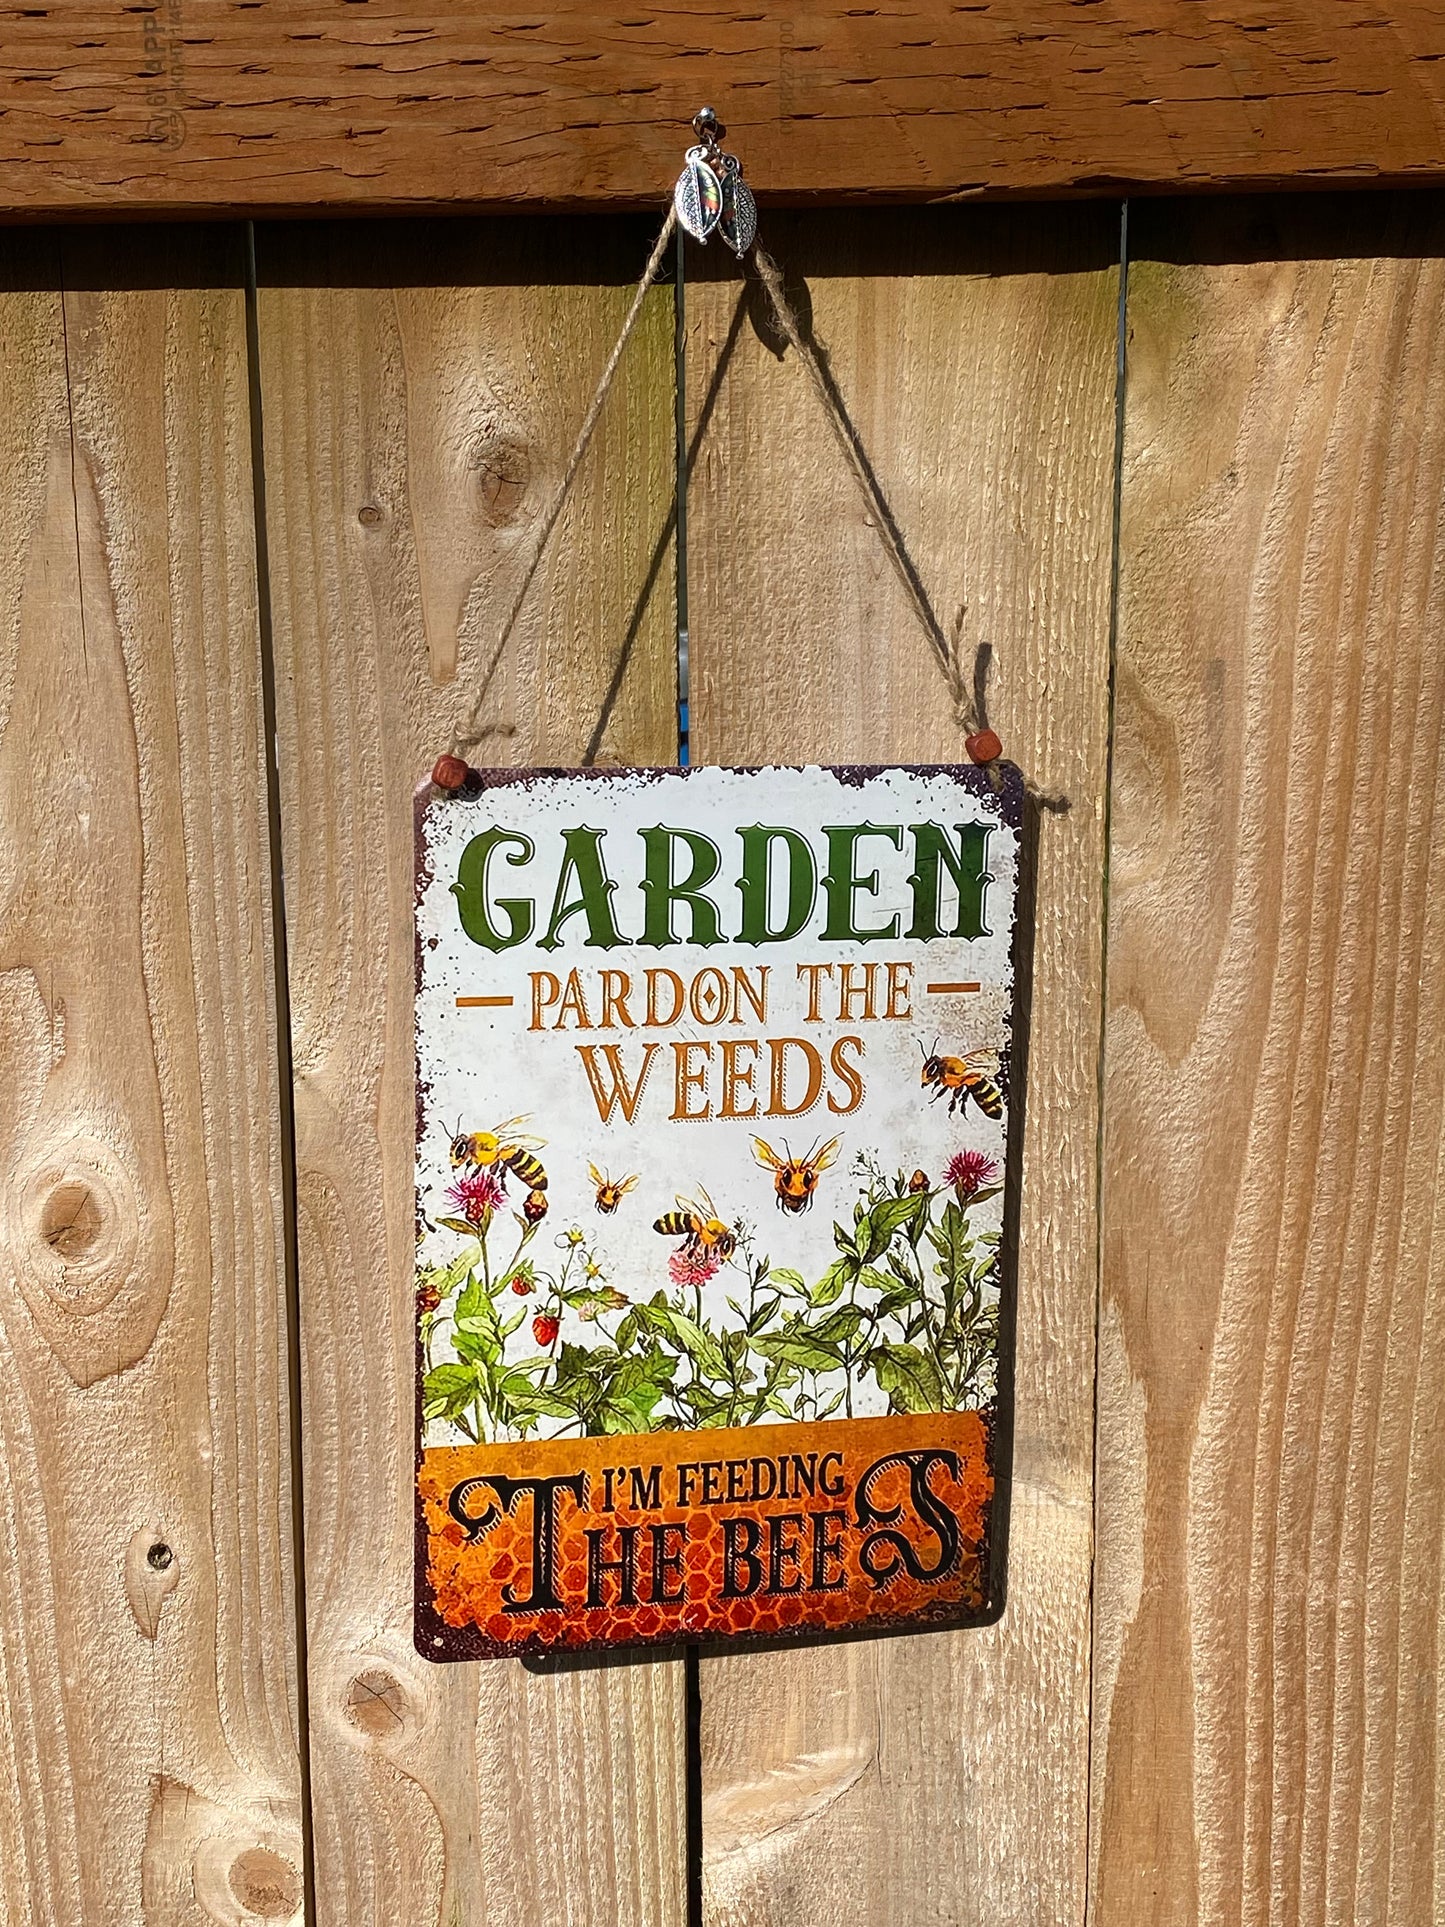 Happy Garden Bee Pardon the Weeds sign